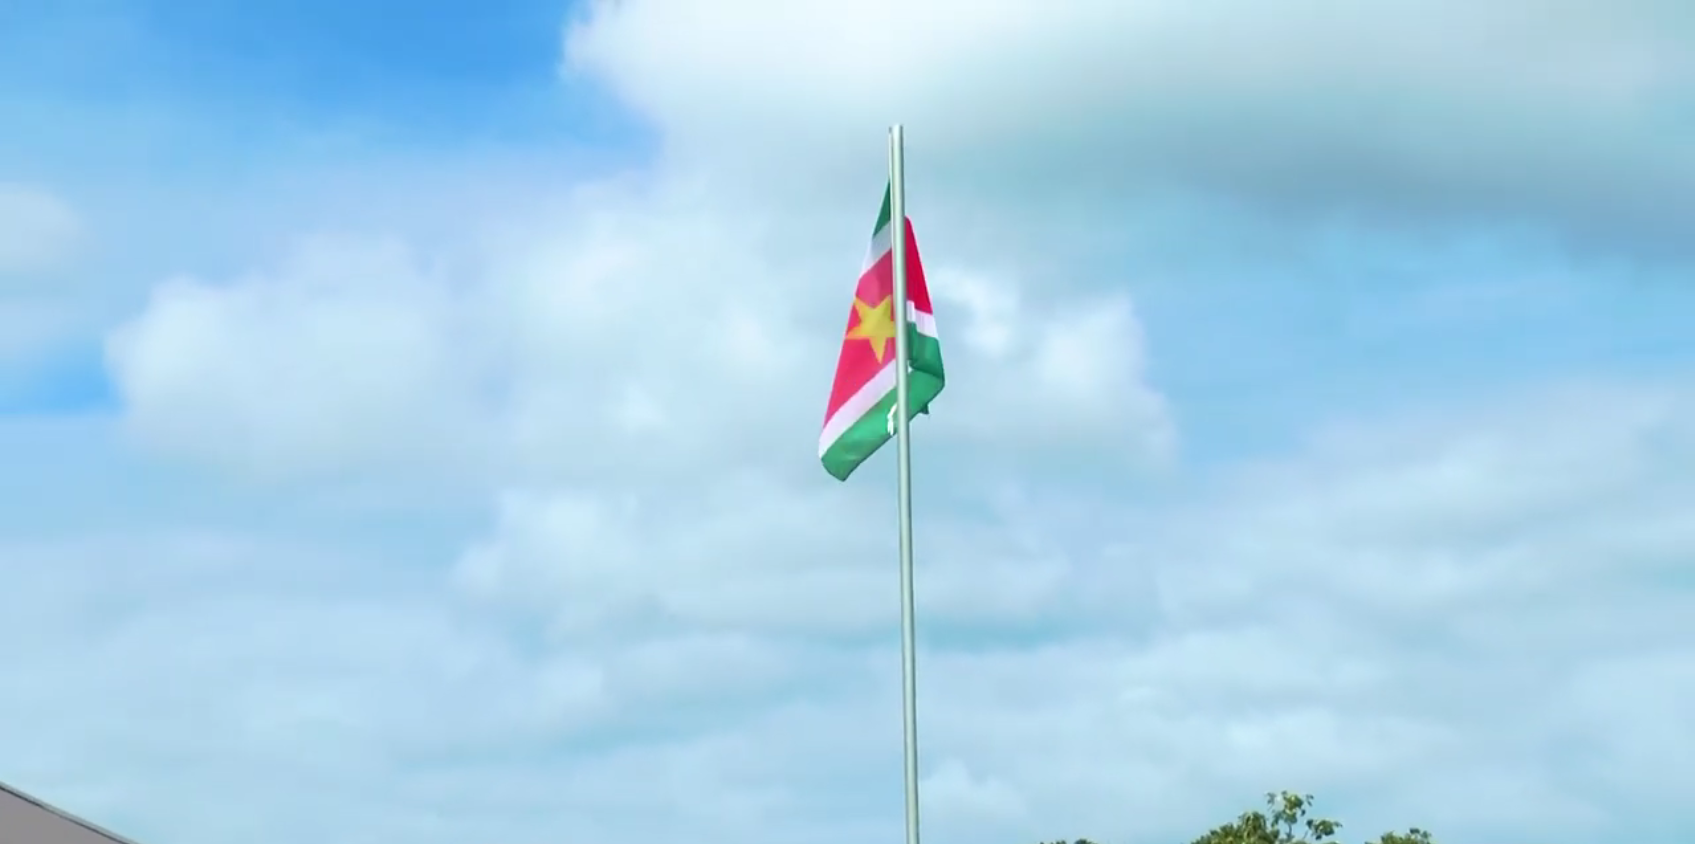 Hãy đến và khám phá vẻ đẹp tuyệt vời của biểu tượng dân tộc Surinam thông qua hình ảnh rực rỡ của cờ Surinamse. Cờ như một quốc kỳ tuy nhỏ nhưng sẽ khiến bạn cảm thấy yêu mến với quốc gia nhỏ bé này.